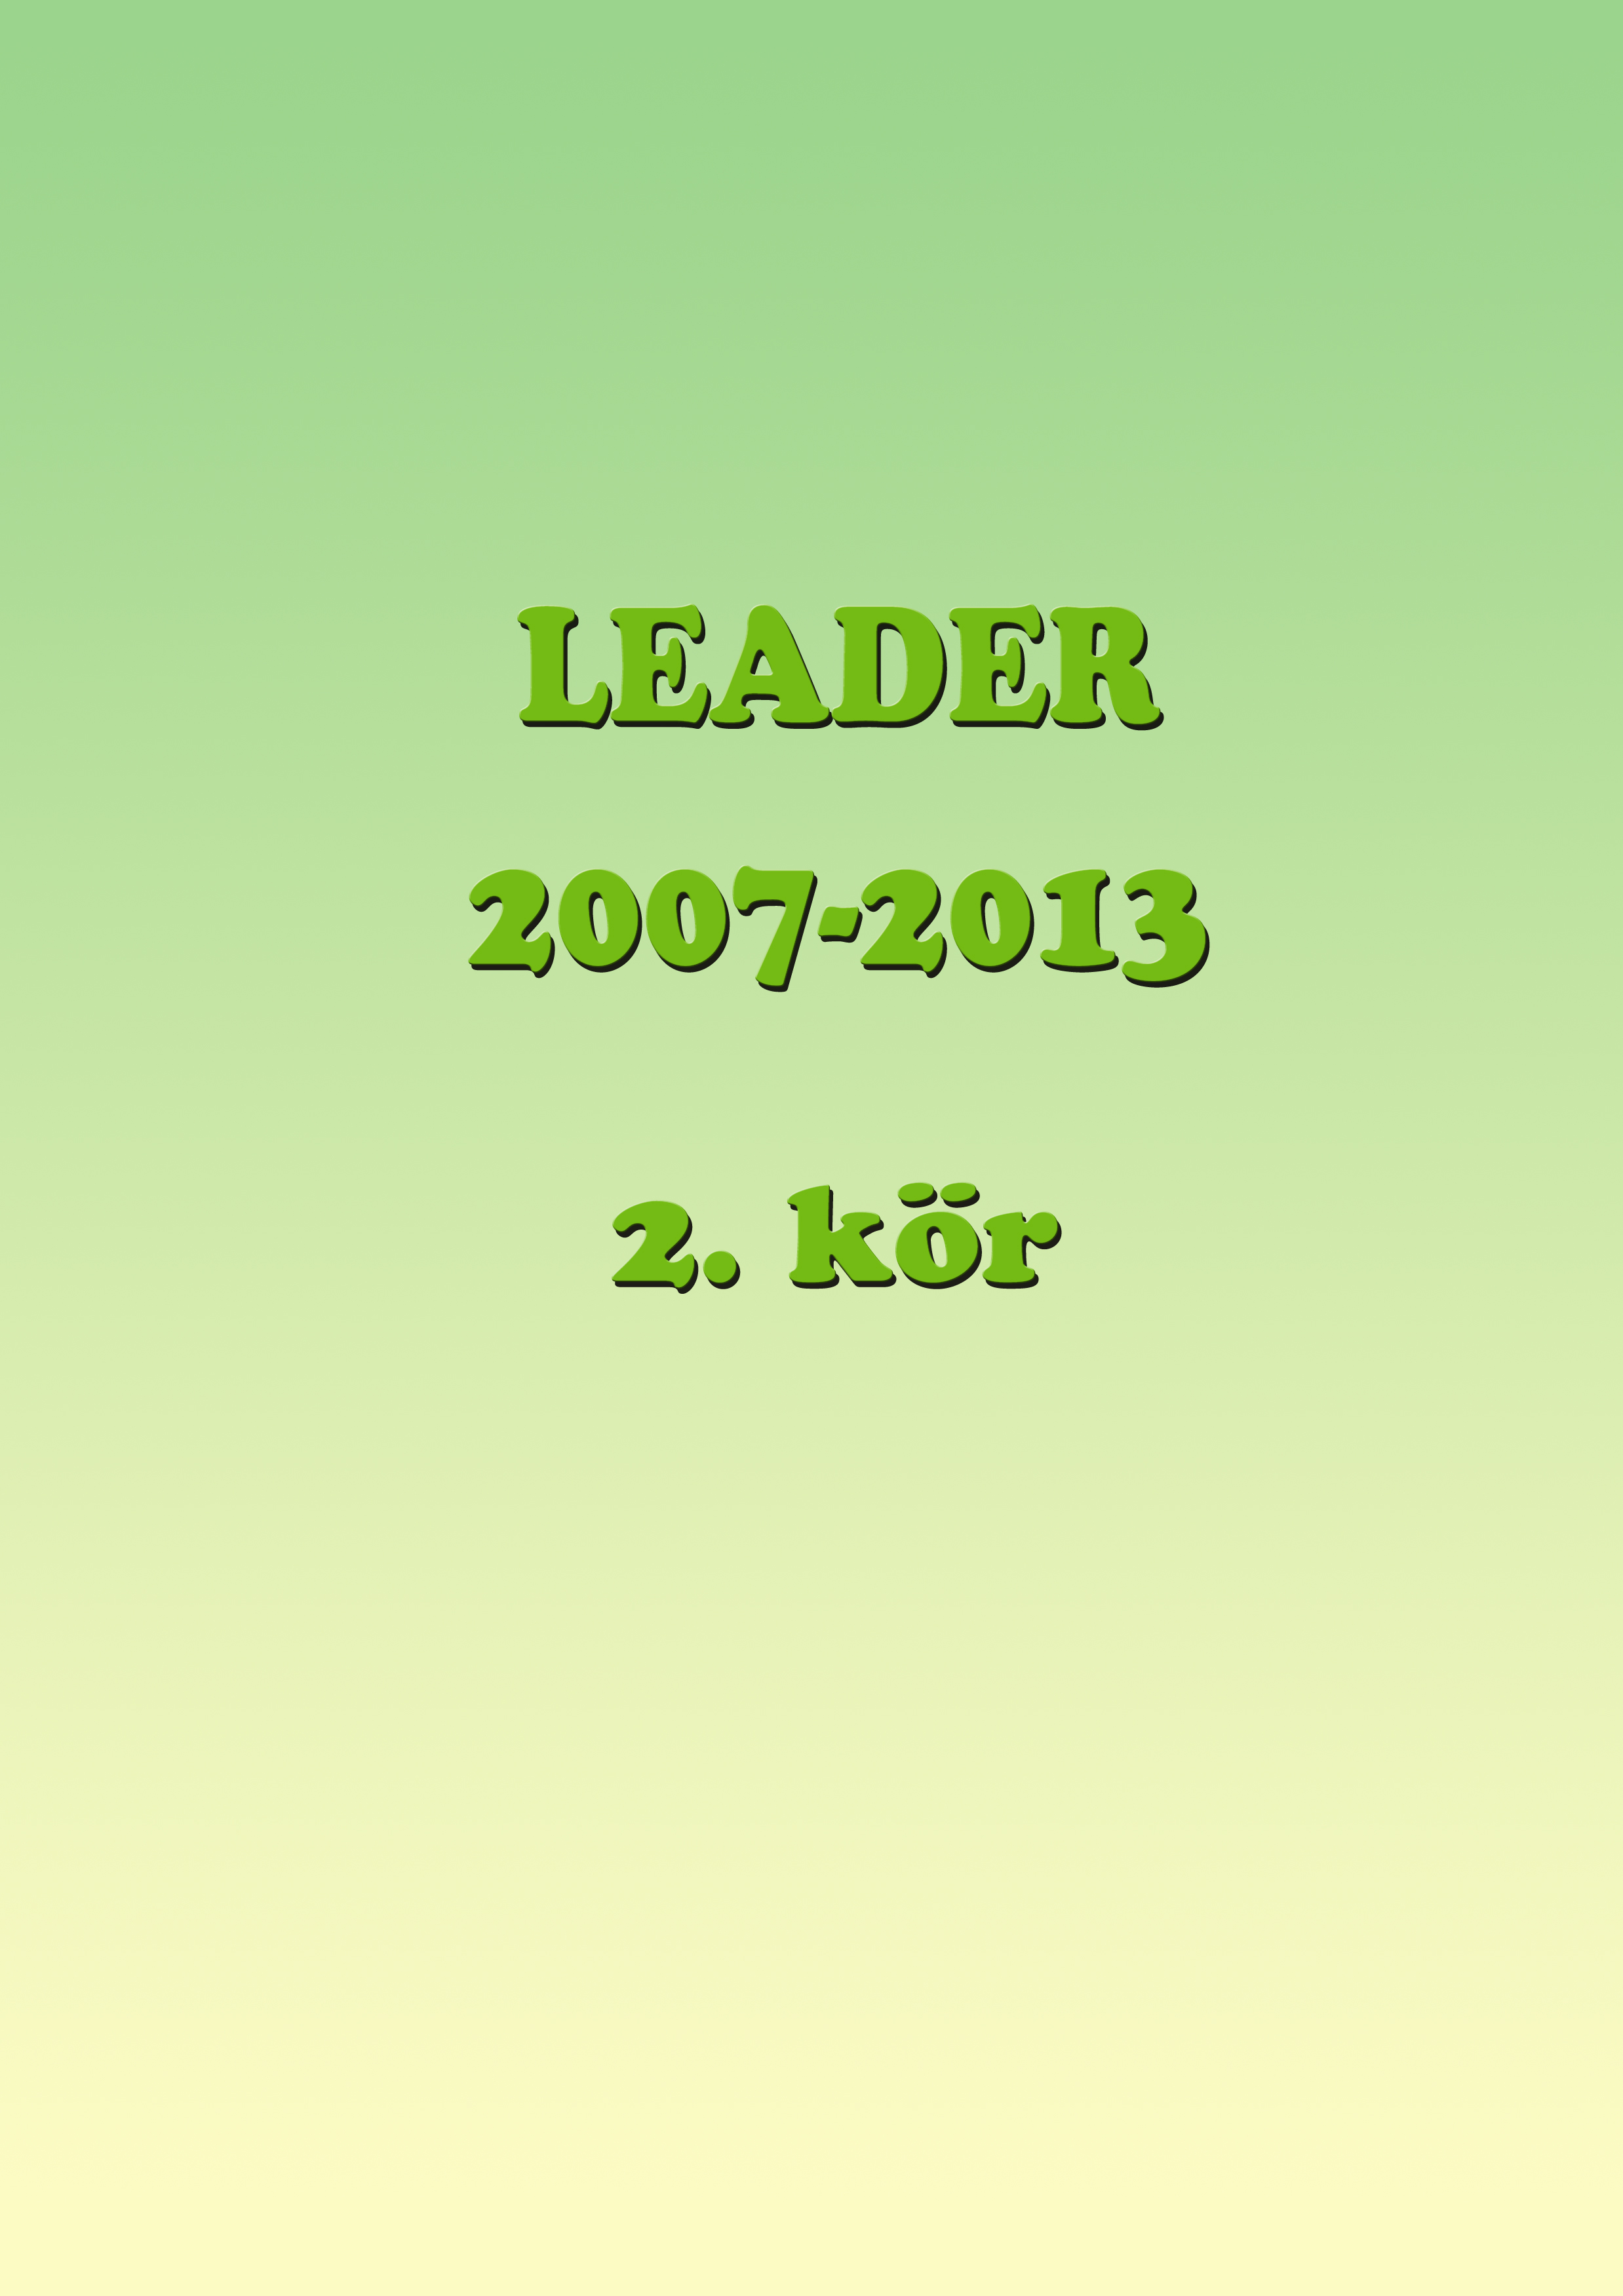 leadertk2